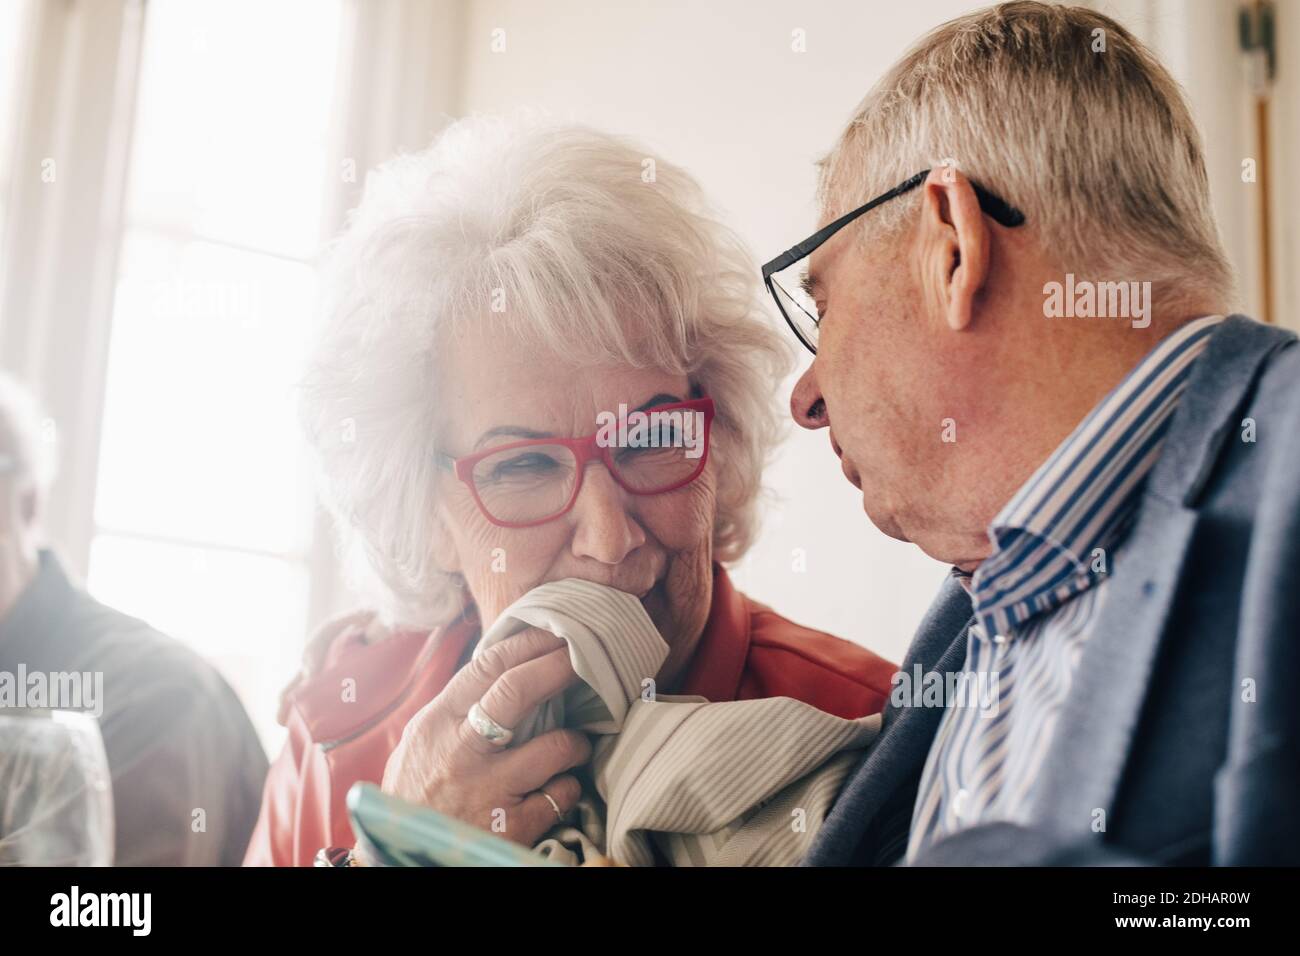 Ältere Frau im Restaurant im Gespräch mit einem Freund Stockfoto